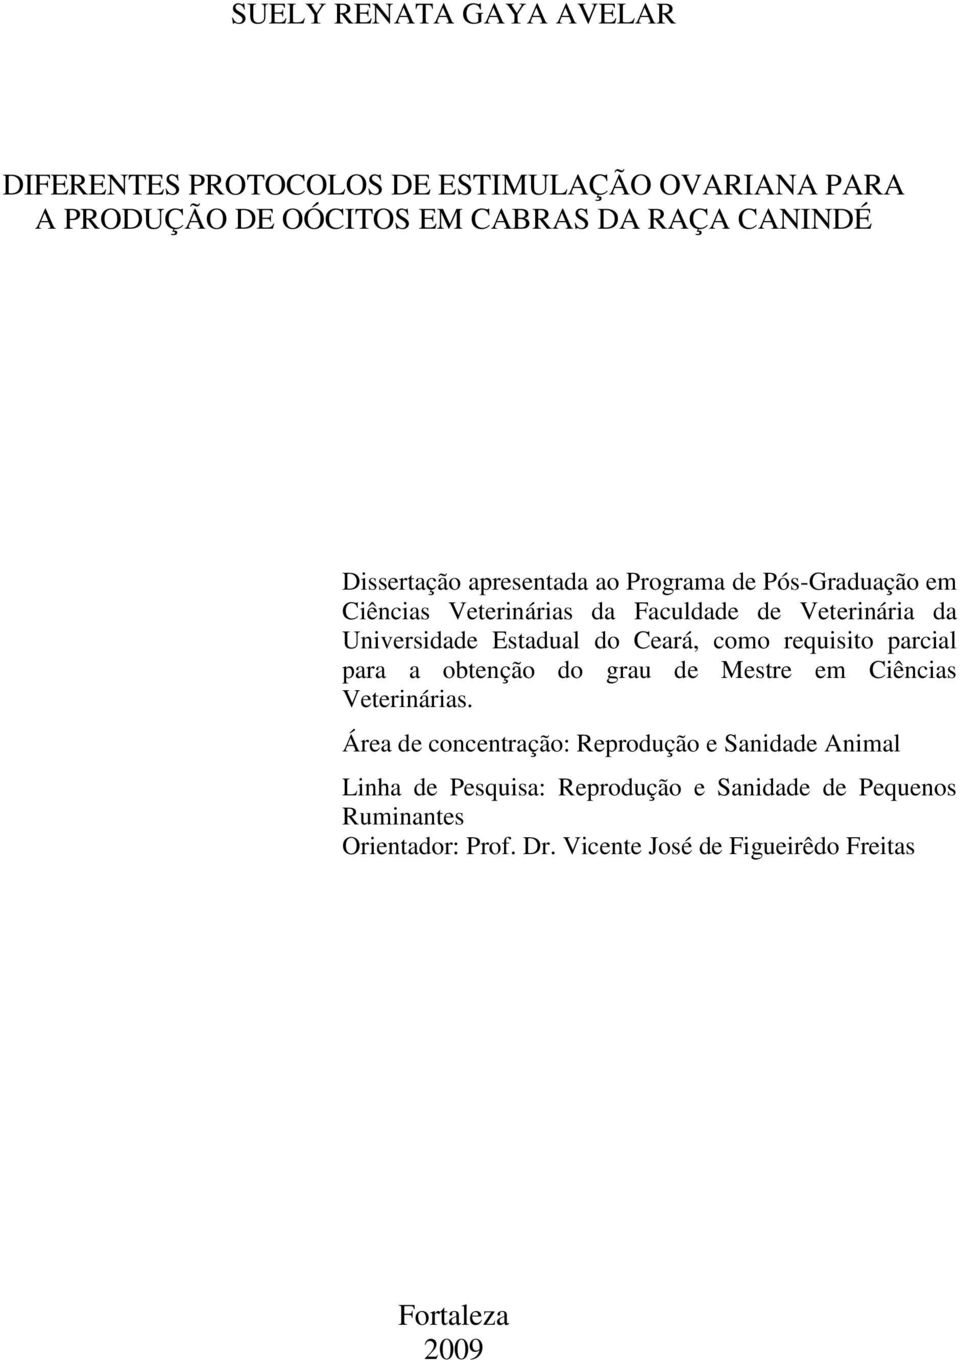 Ceará, como requisito parcial para a obtenção do grau de Mestre em Ciências Veterinárias.